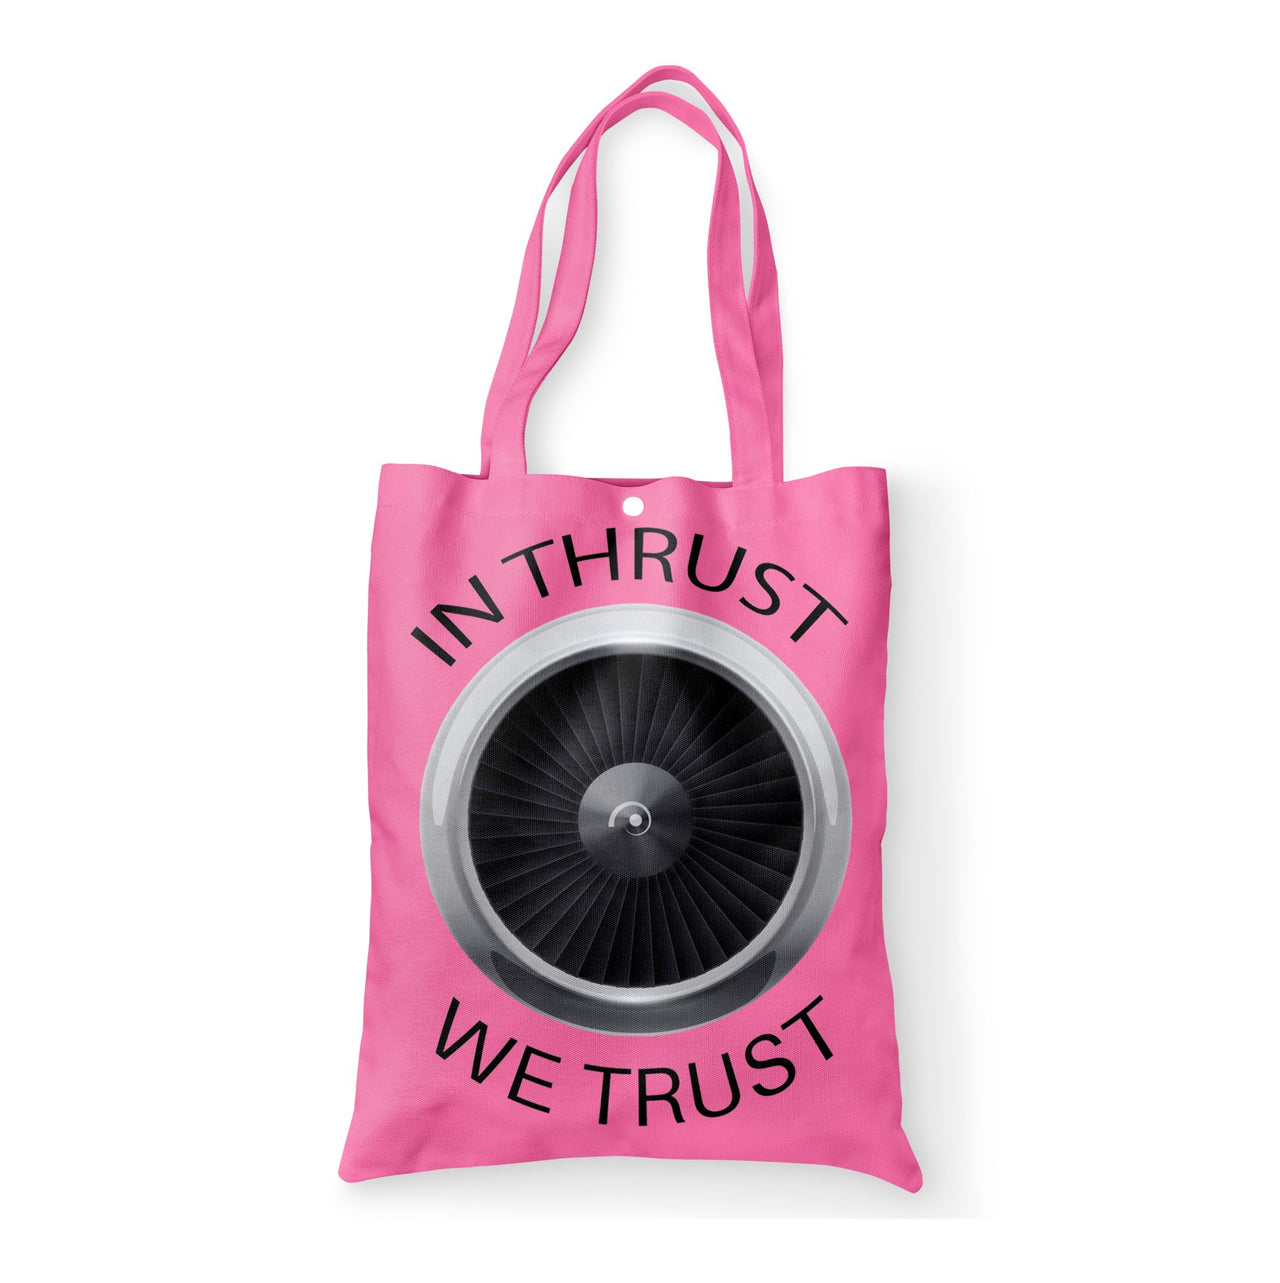 In Thrust We Trust Designed Tote Bags